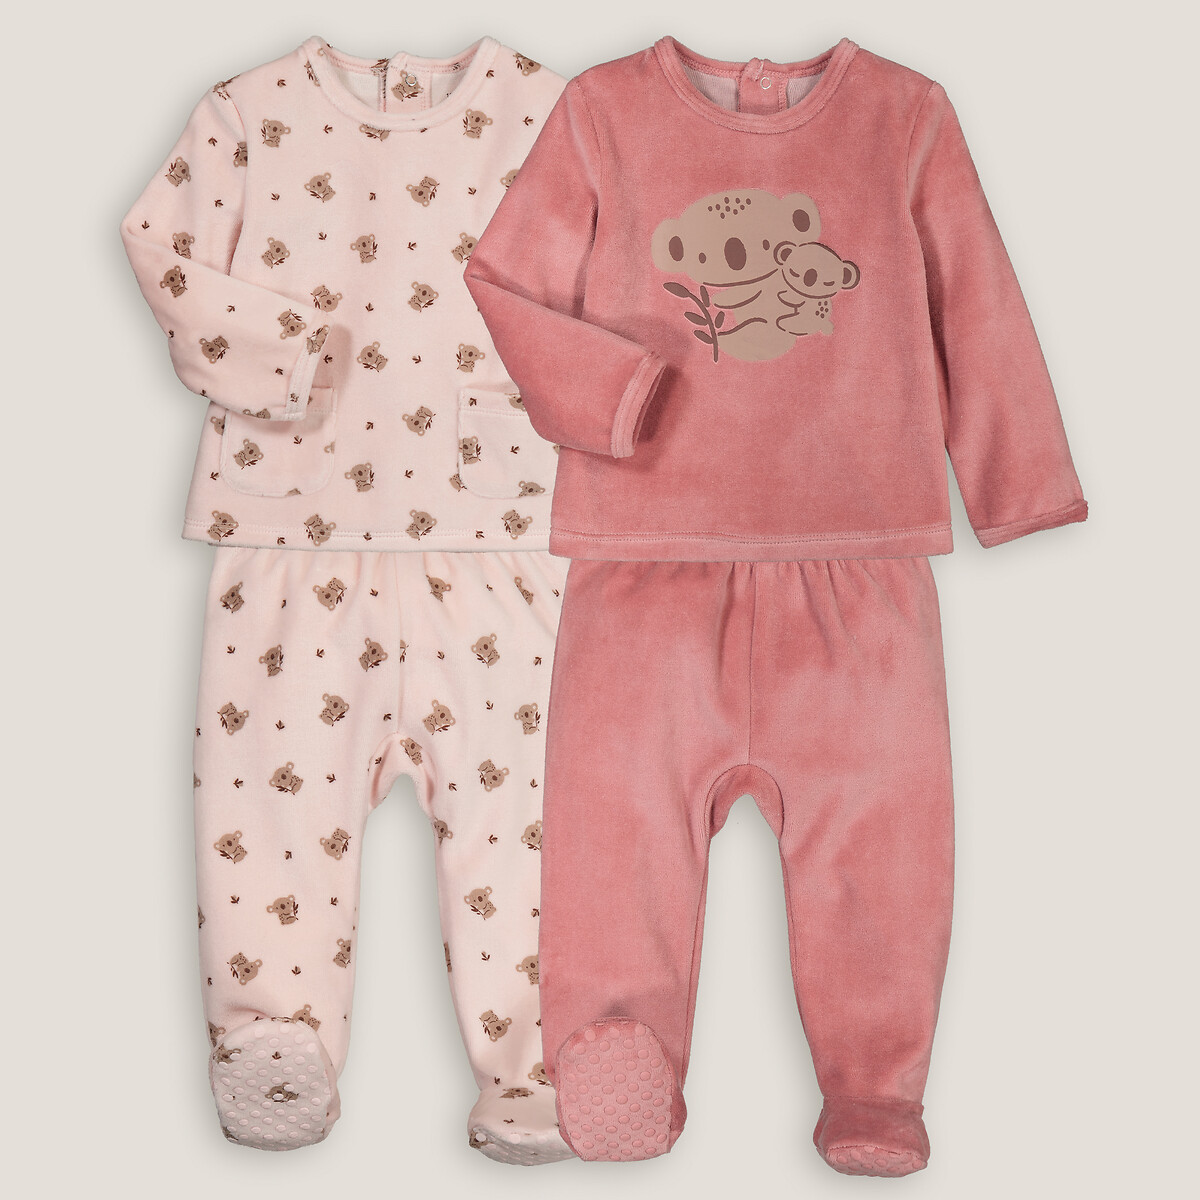 Комплект из двух пижам раздельных из велюра принт коалы 4 года - 102 см розовый комплект из двух ночных рубашек из велюра с принтом кошки 4 года 102 см бежевый